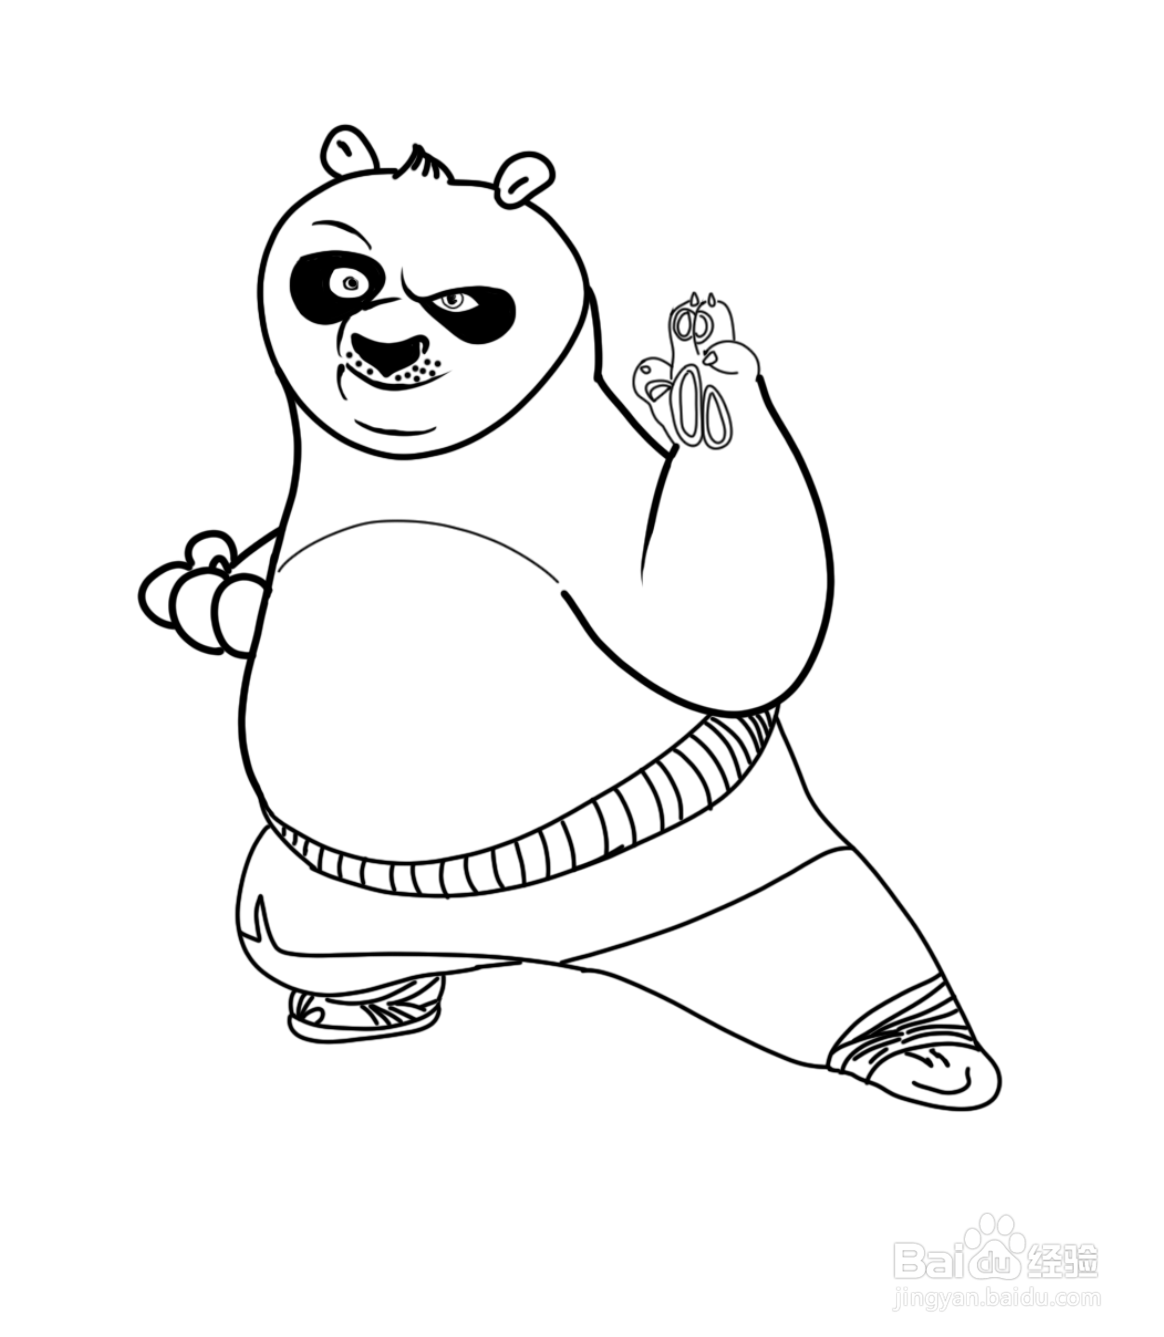 功夫熊猫的画法图片